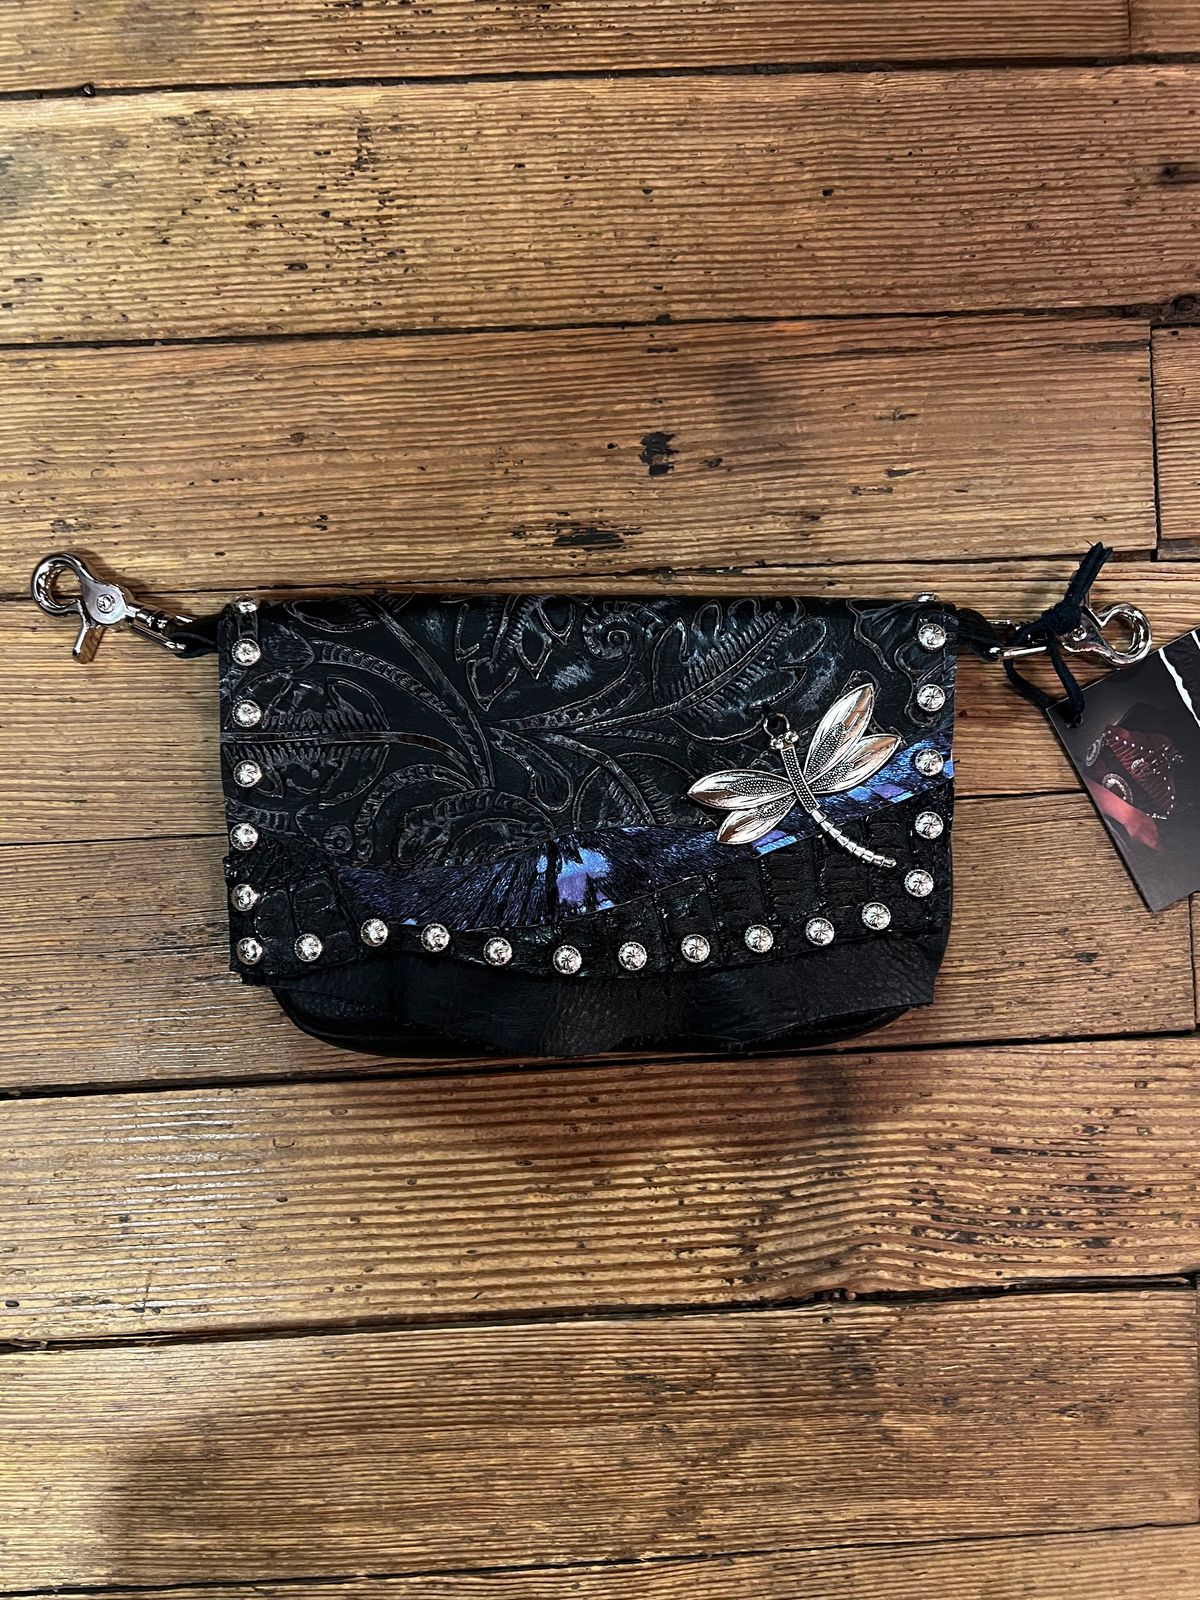 western steampunk handbag or hipbag leather